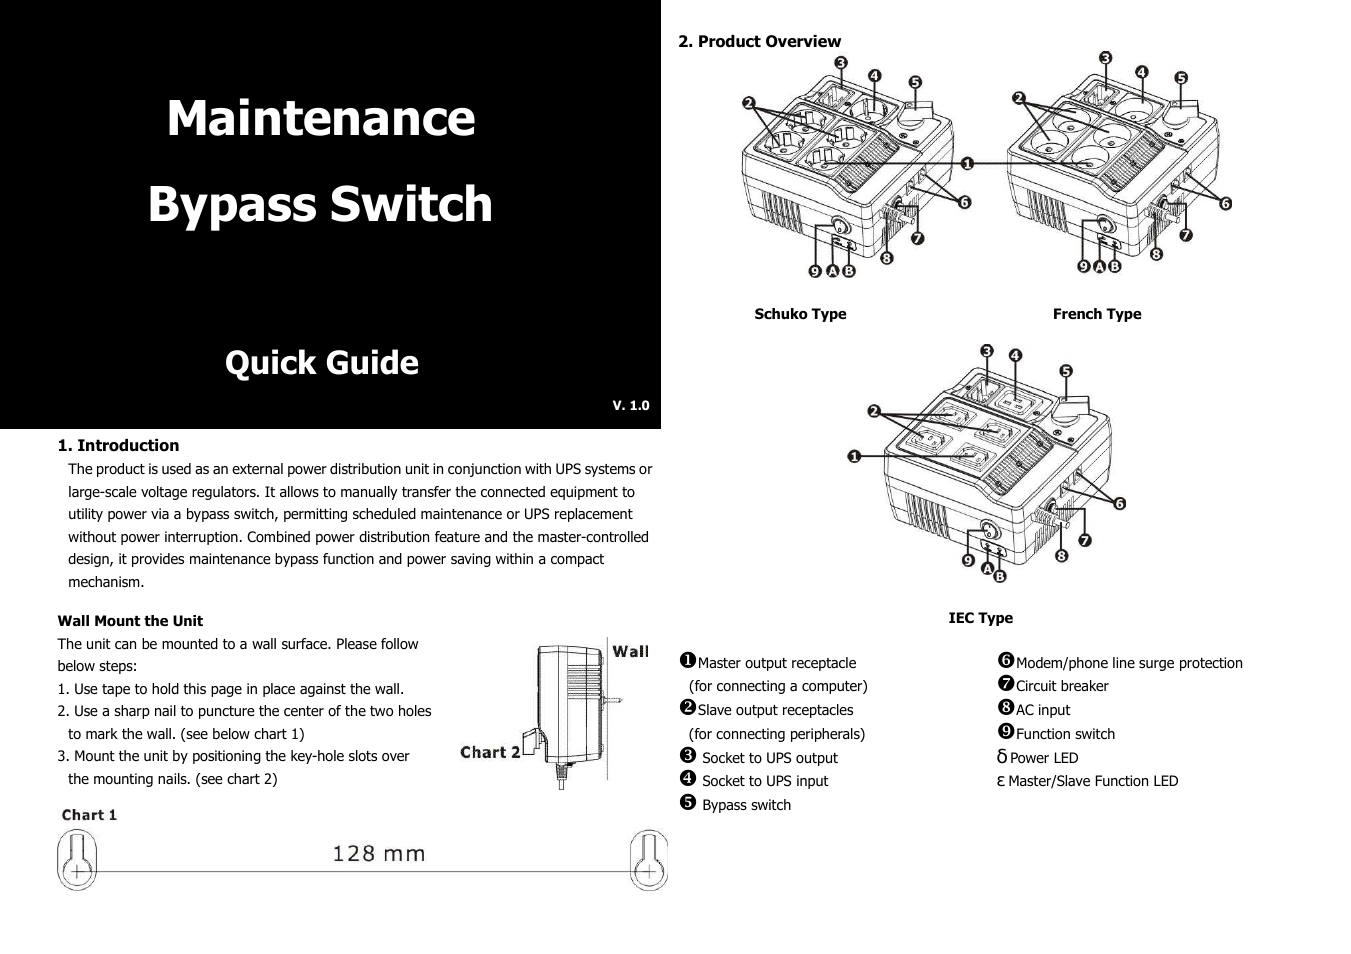 Maintenance Bypass Switch